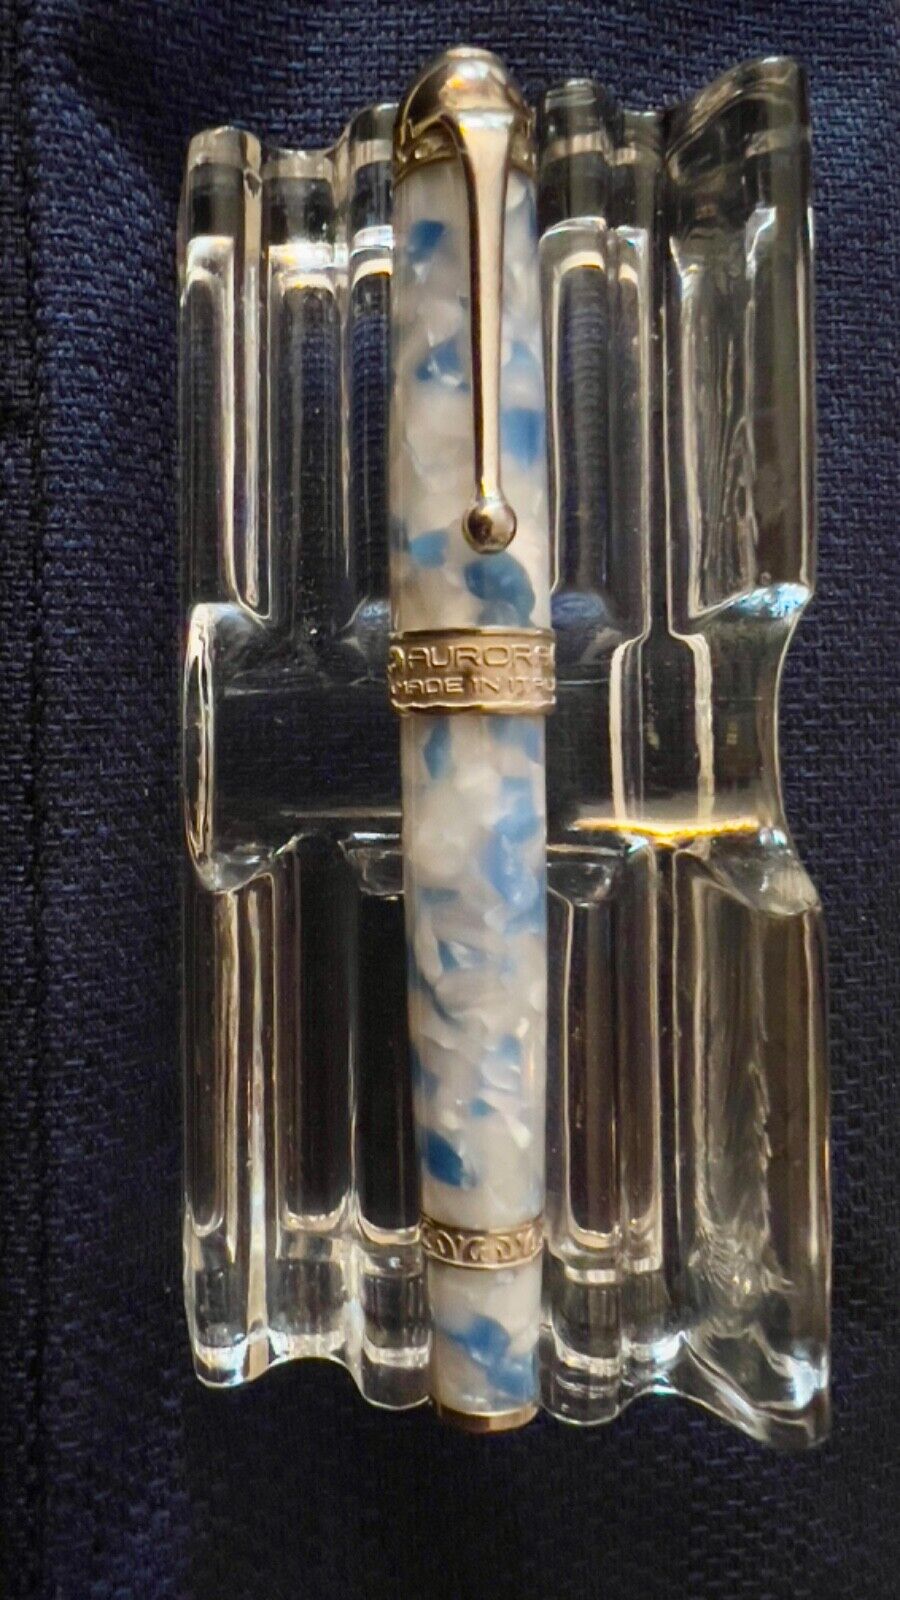 Aurora Ambienti Glacier Limited Edition Fountain Pen